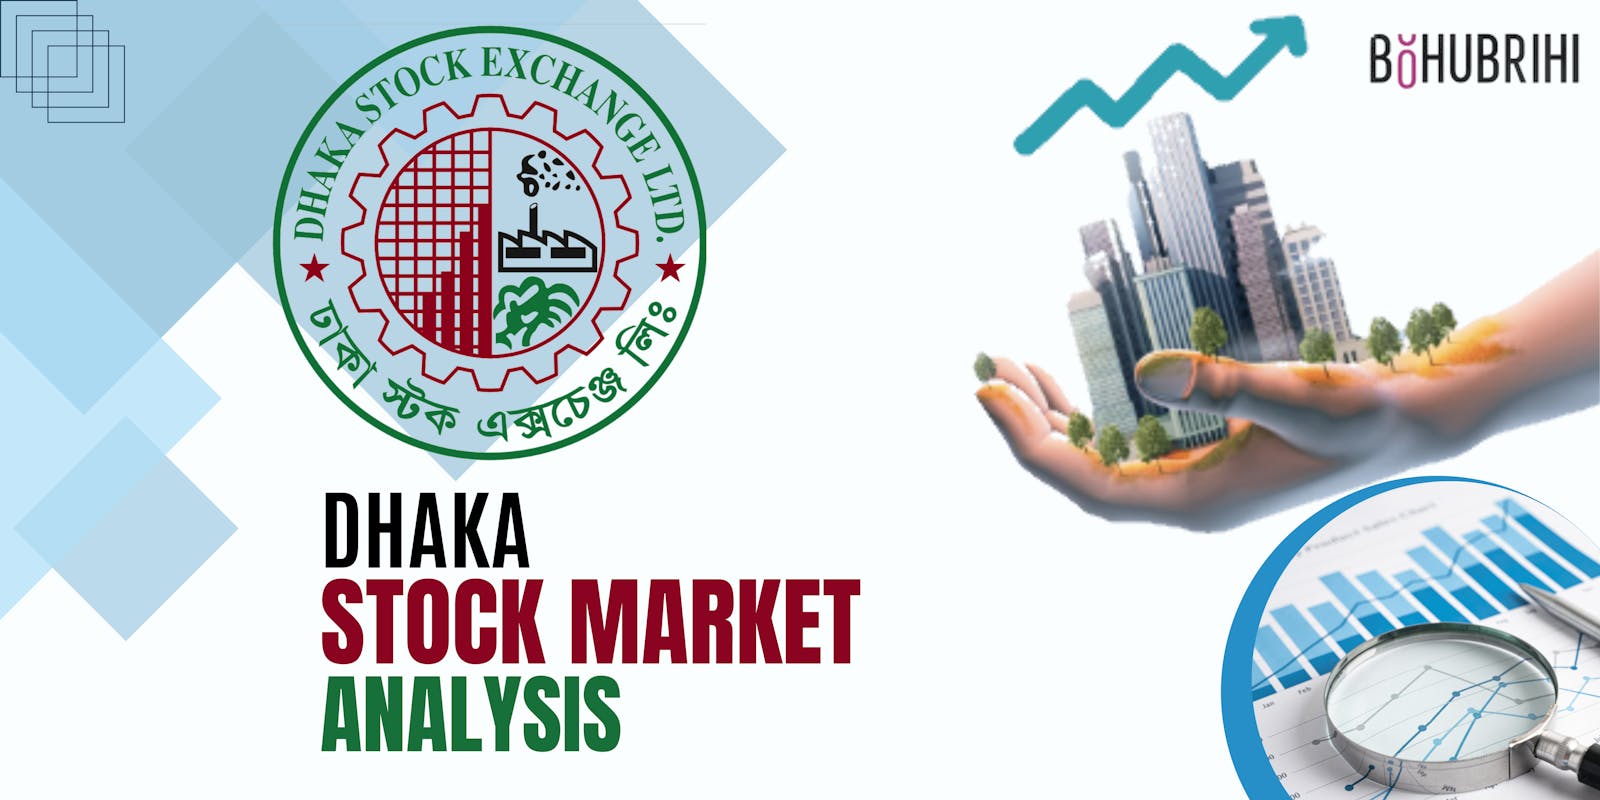 Dhaka Stock Market Data Analysis With Python